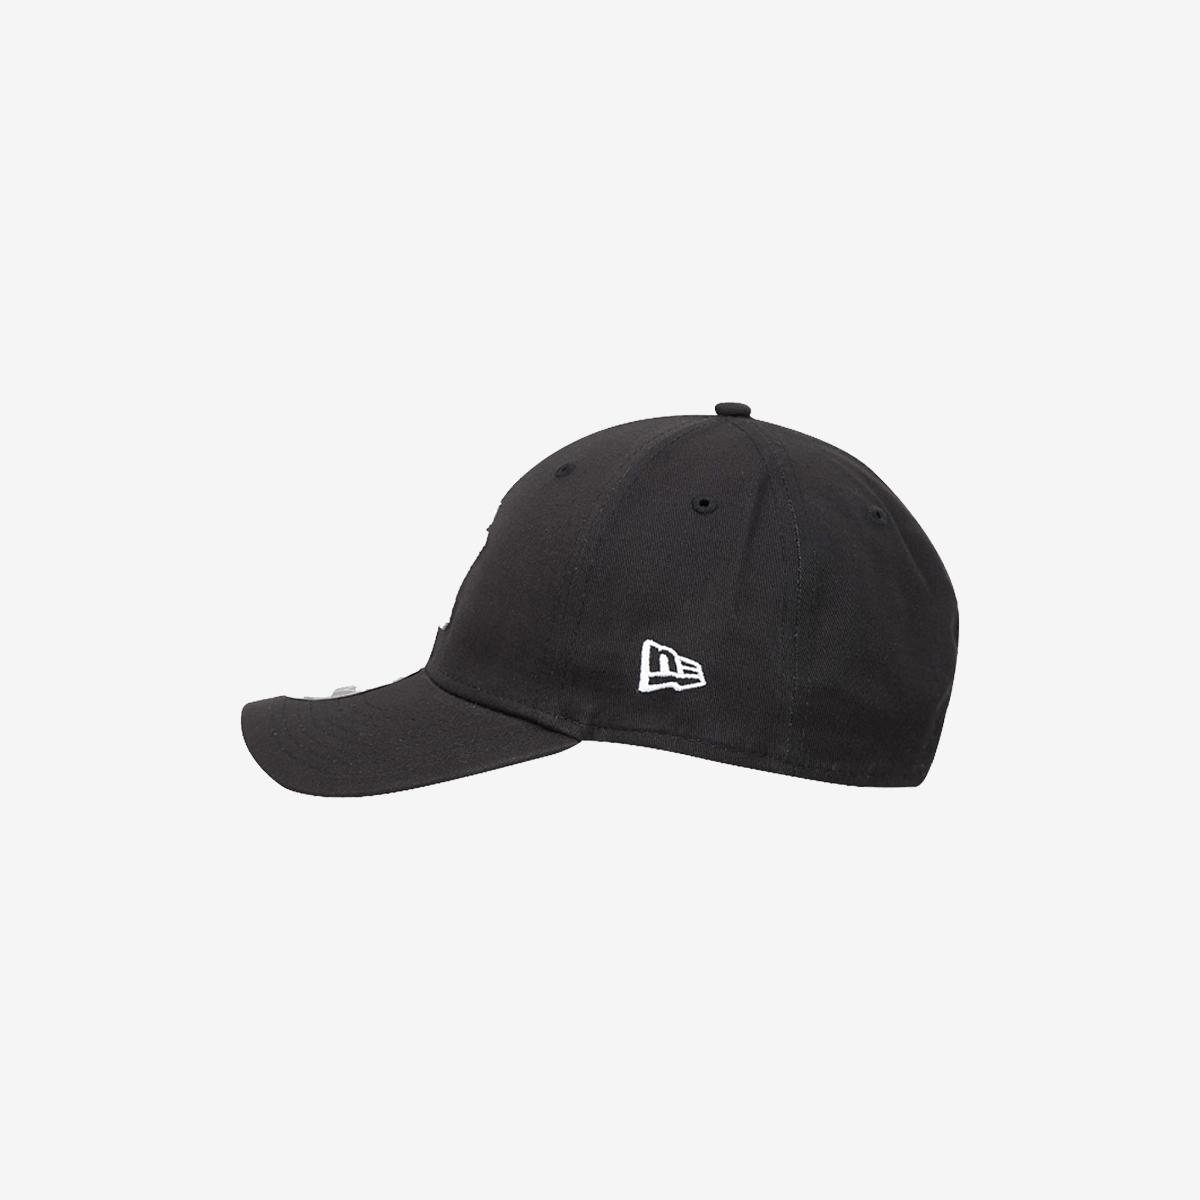 基本紐約洋基隊棒球帽（黑/白）